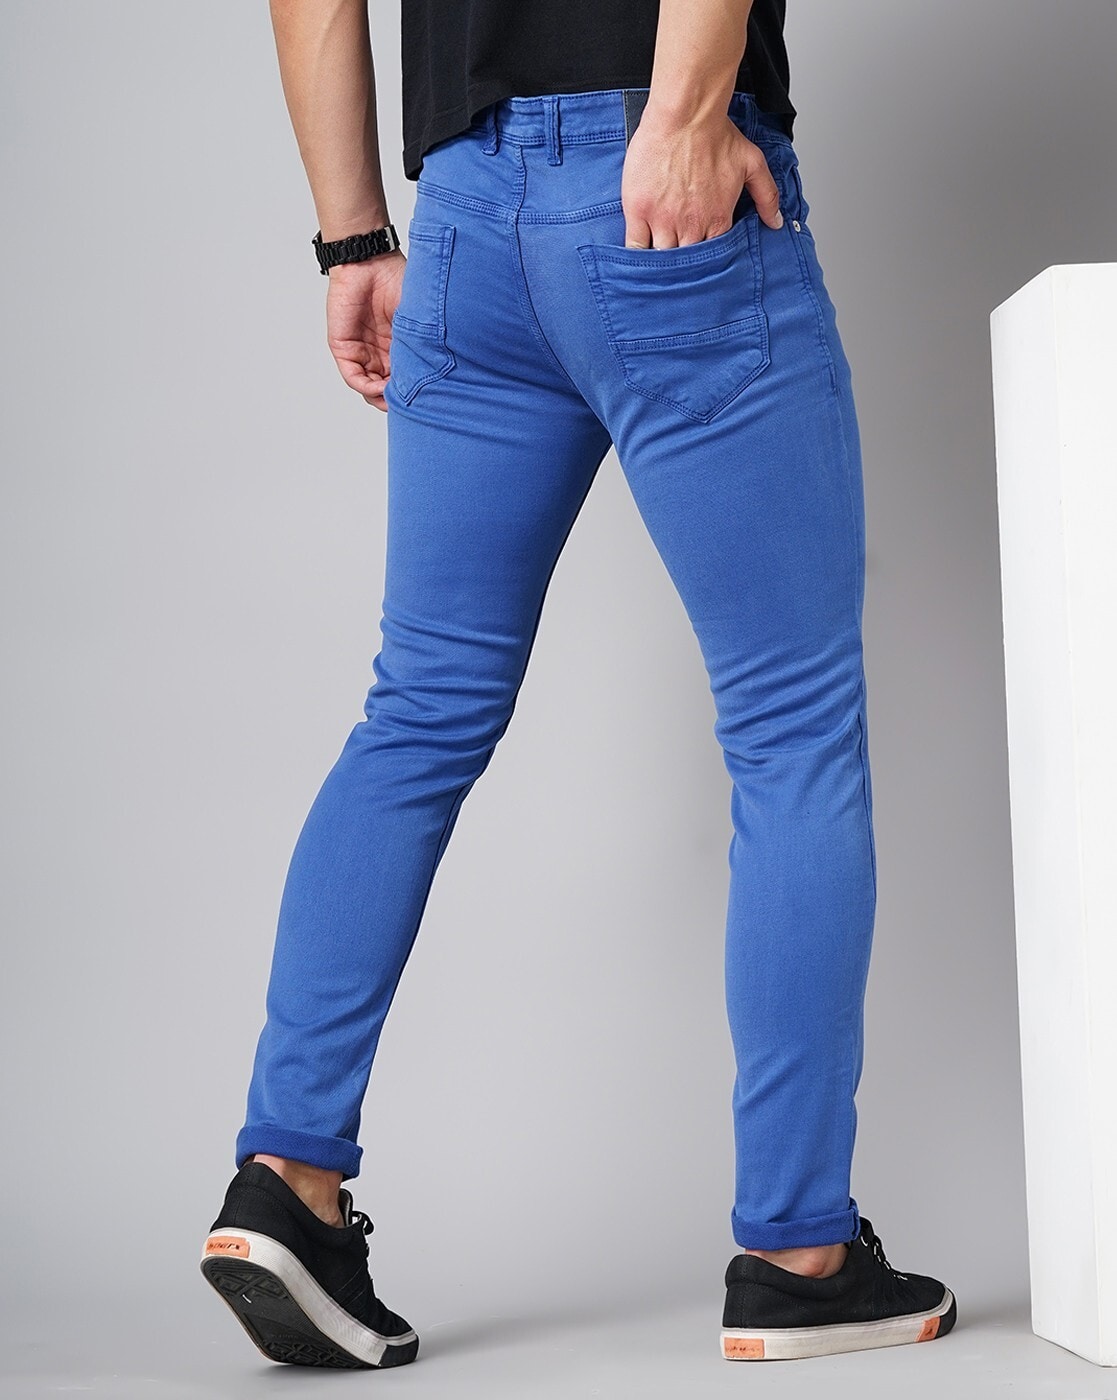 organ affældige At opdage Buy Royal Blue Jeans for Men by Owen Hart Online | Ajio.com